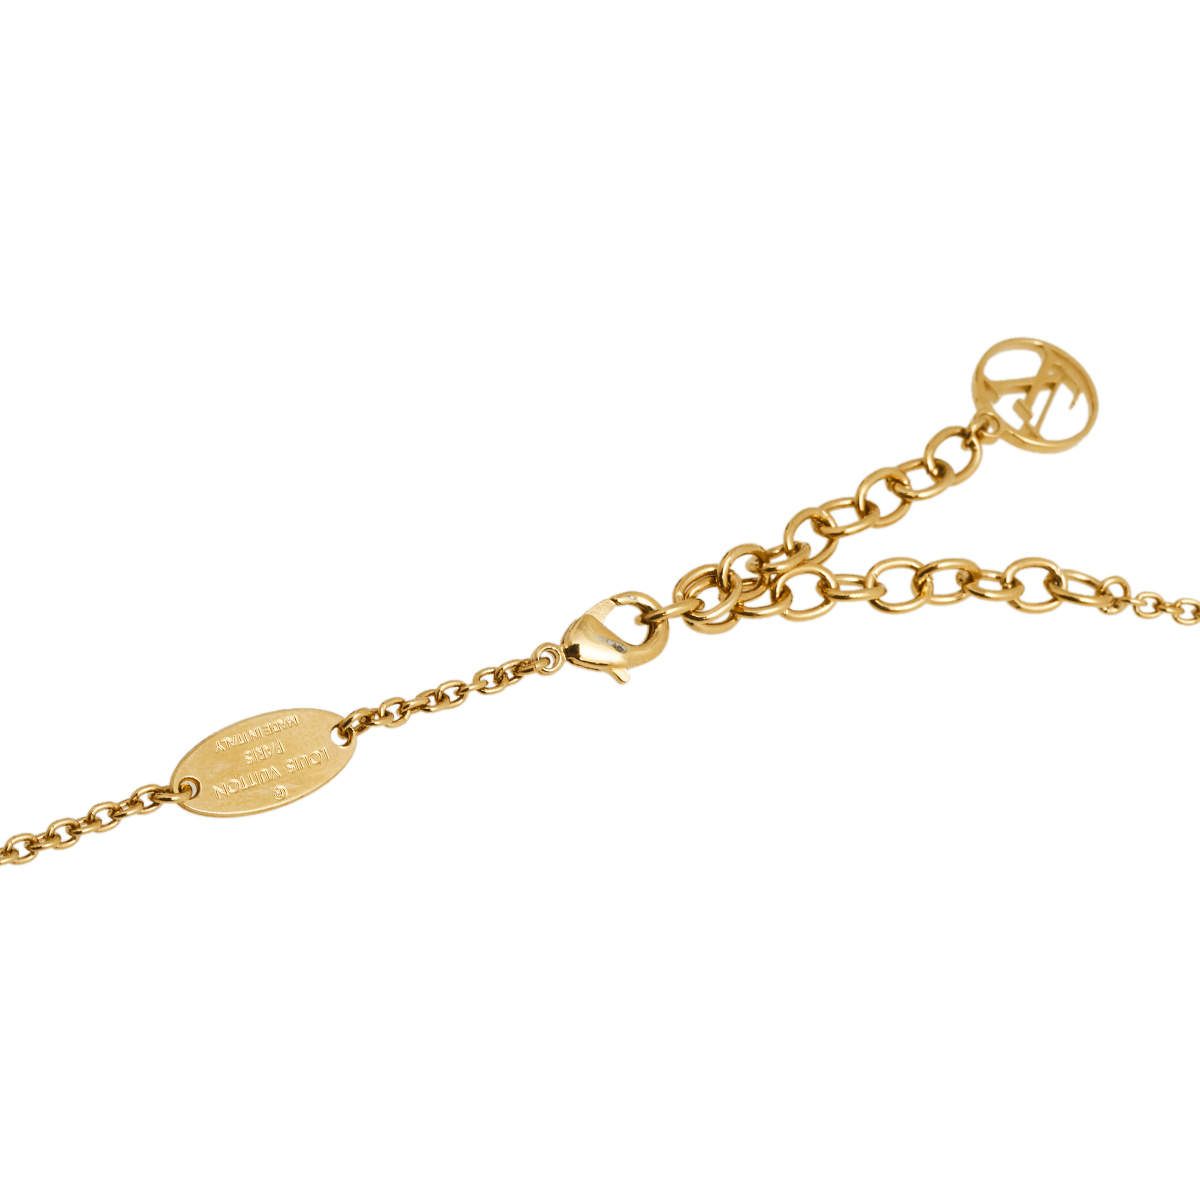 Louis Vuitton Garden Louise Long Pendant Necklace - Brass Pendant Necklace,  Necklaces - LOU670162